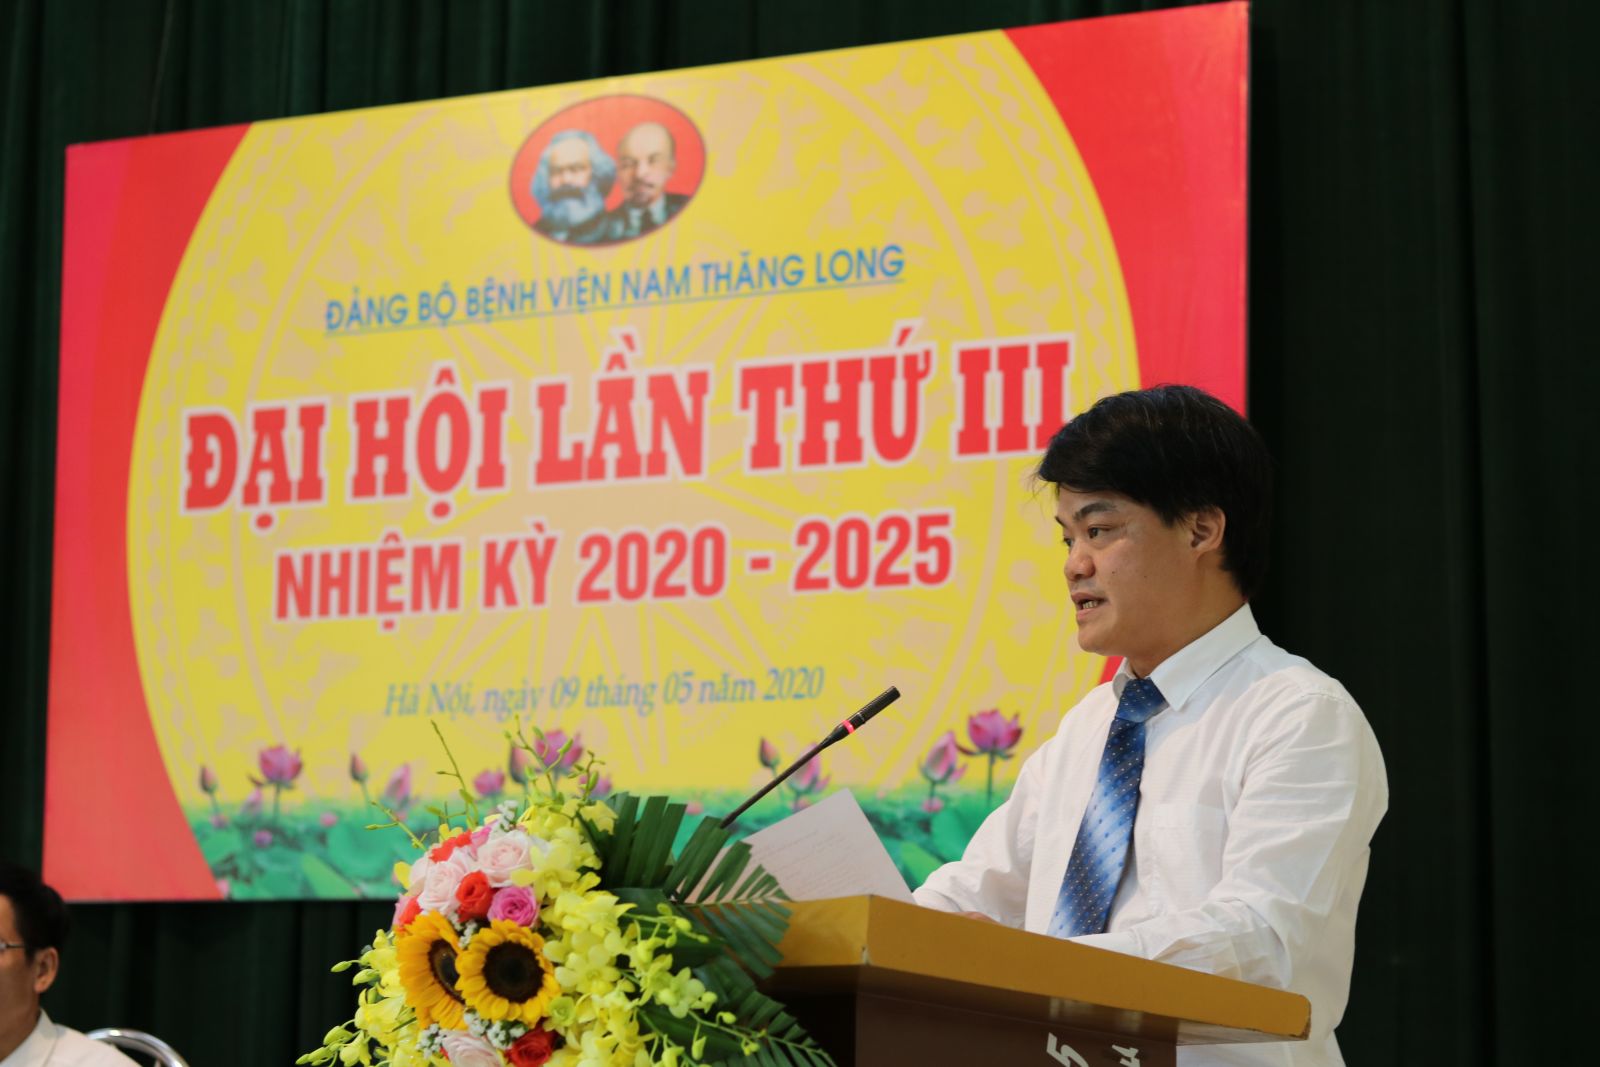 Đại Hội Đảng Bộ Bệnh Viện Nam Thăng Long Nhiệm Kỳ 2020 - 2025